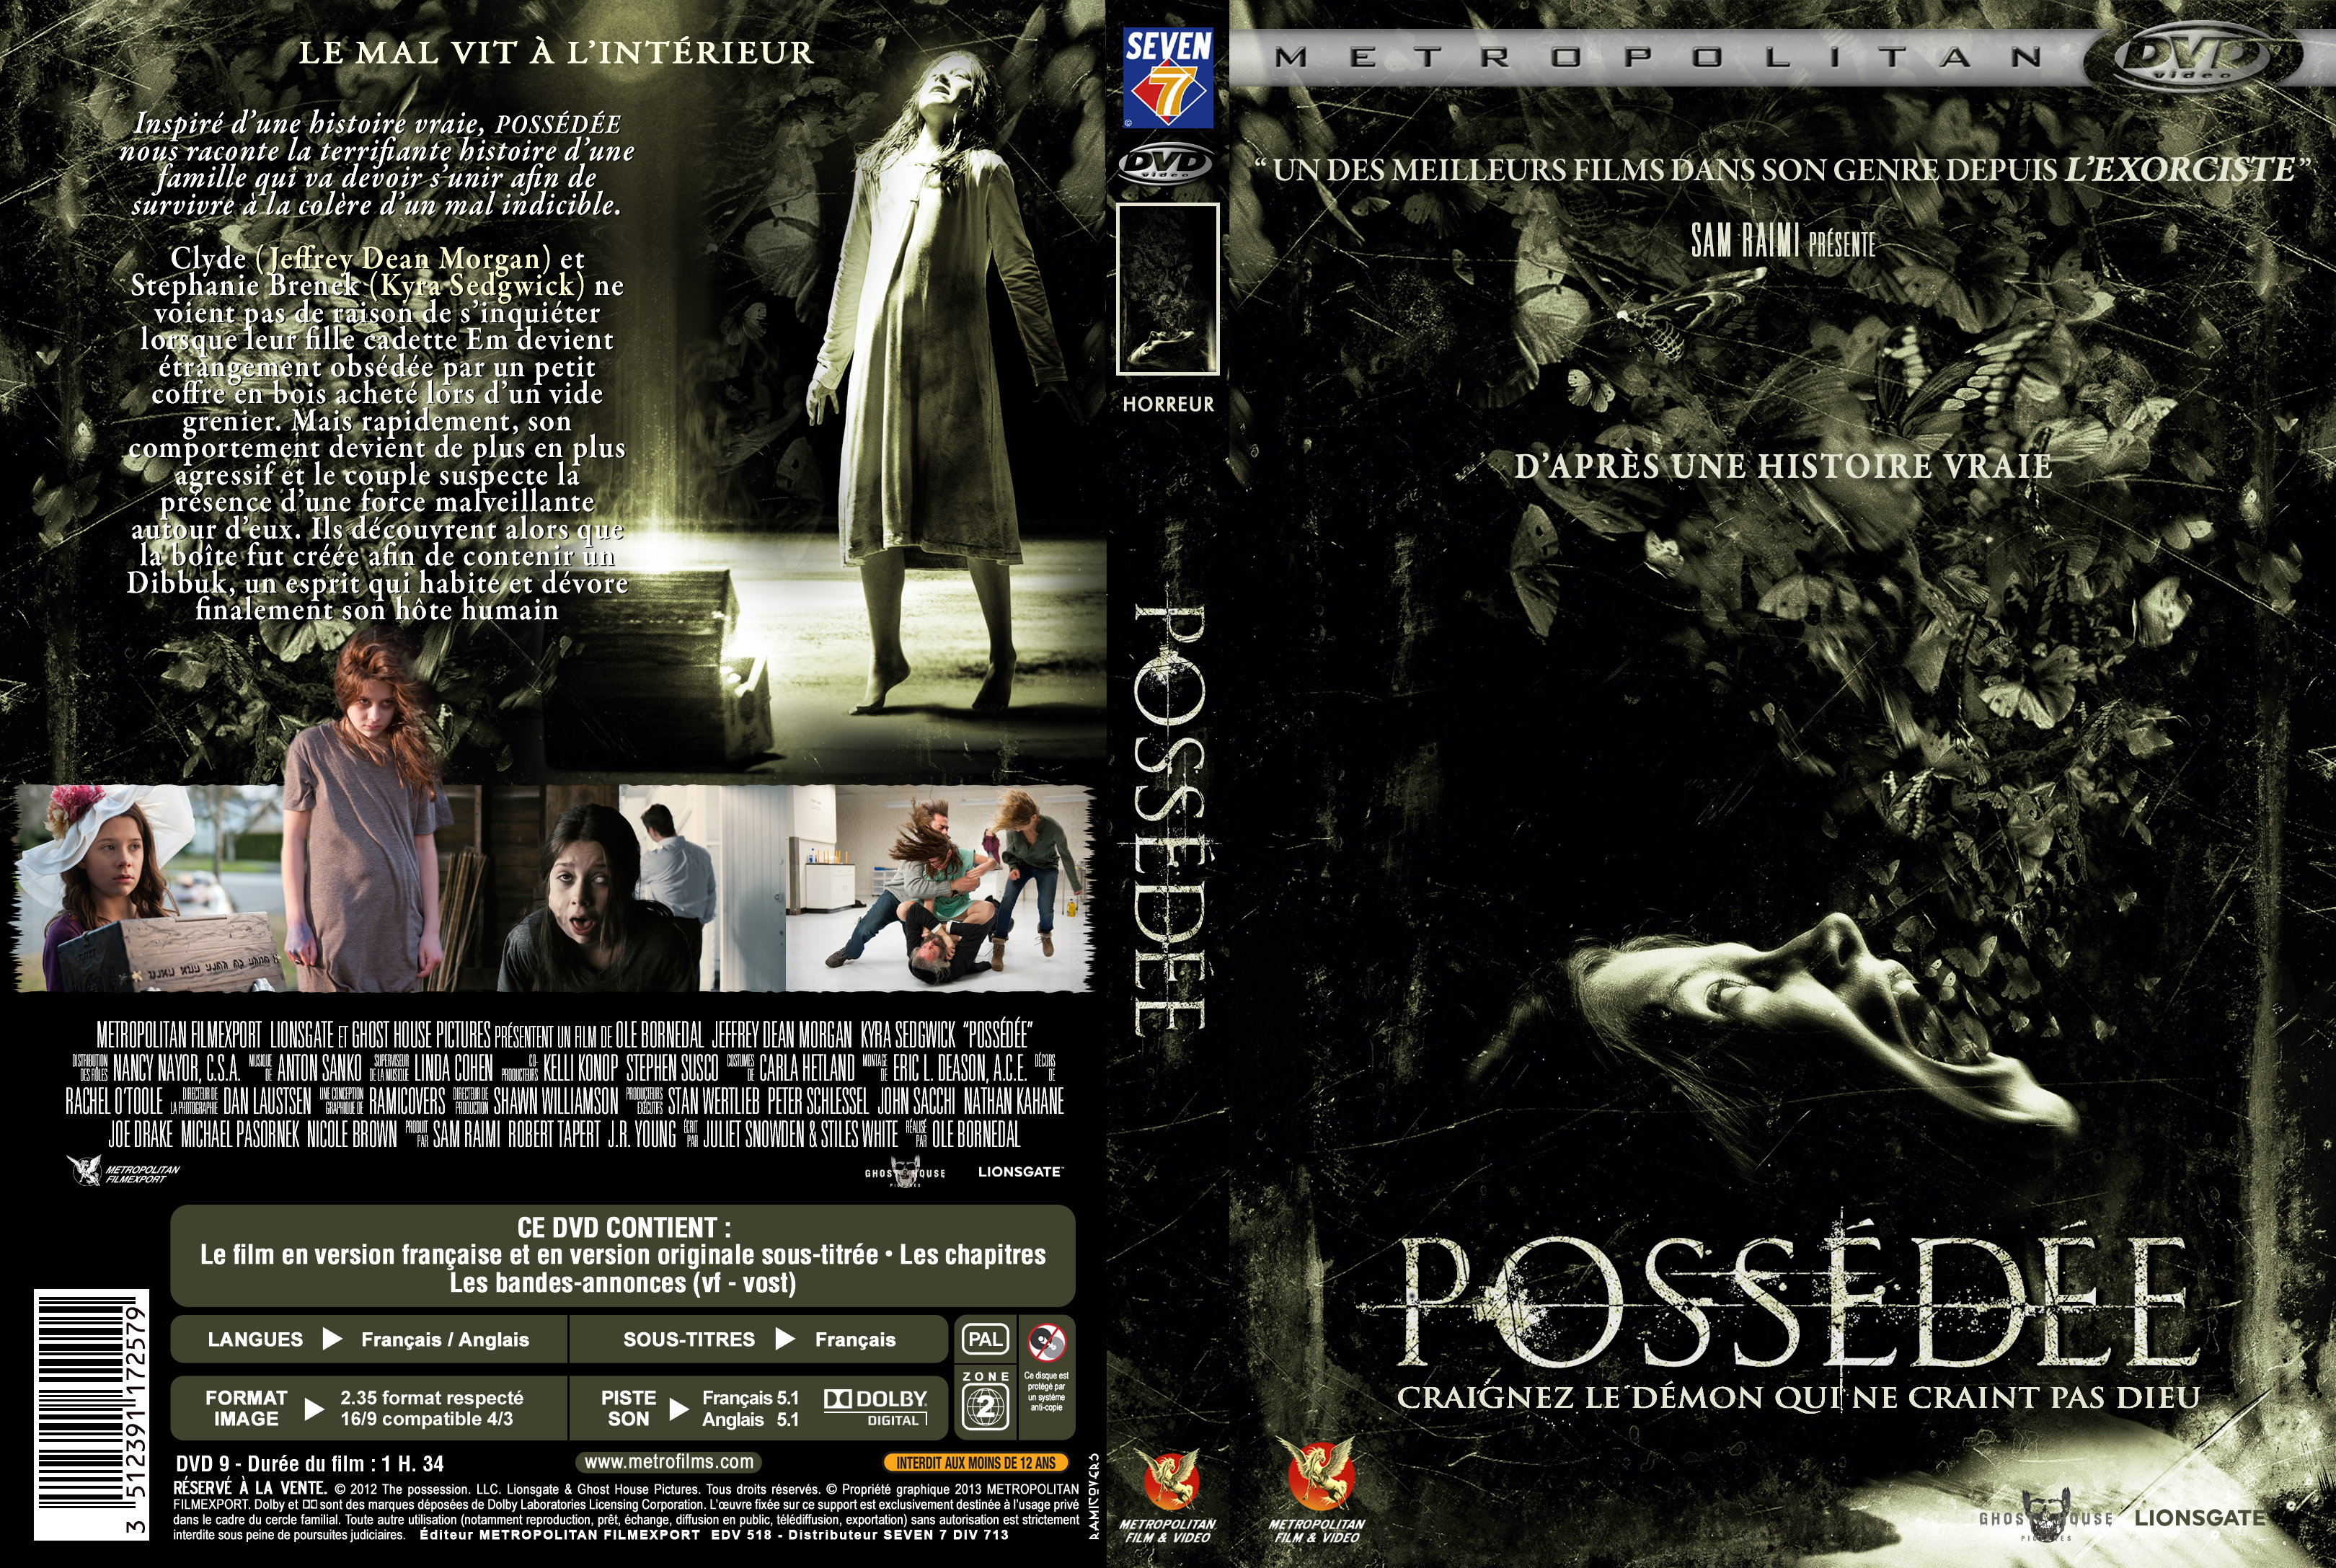 Jaquette DVD Possde (2012) custom v2